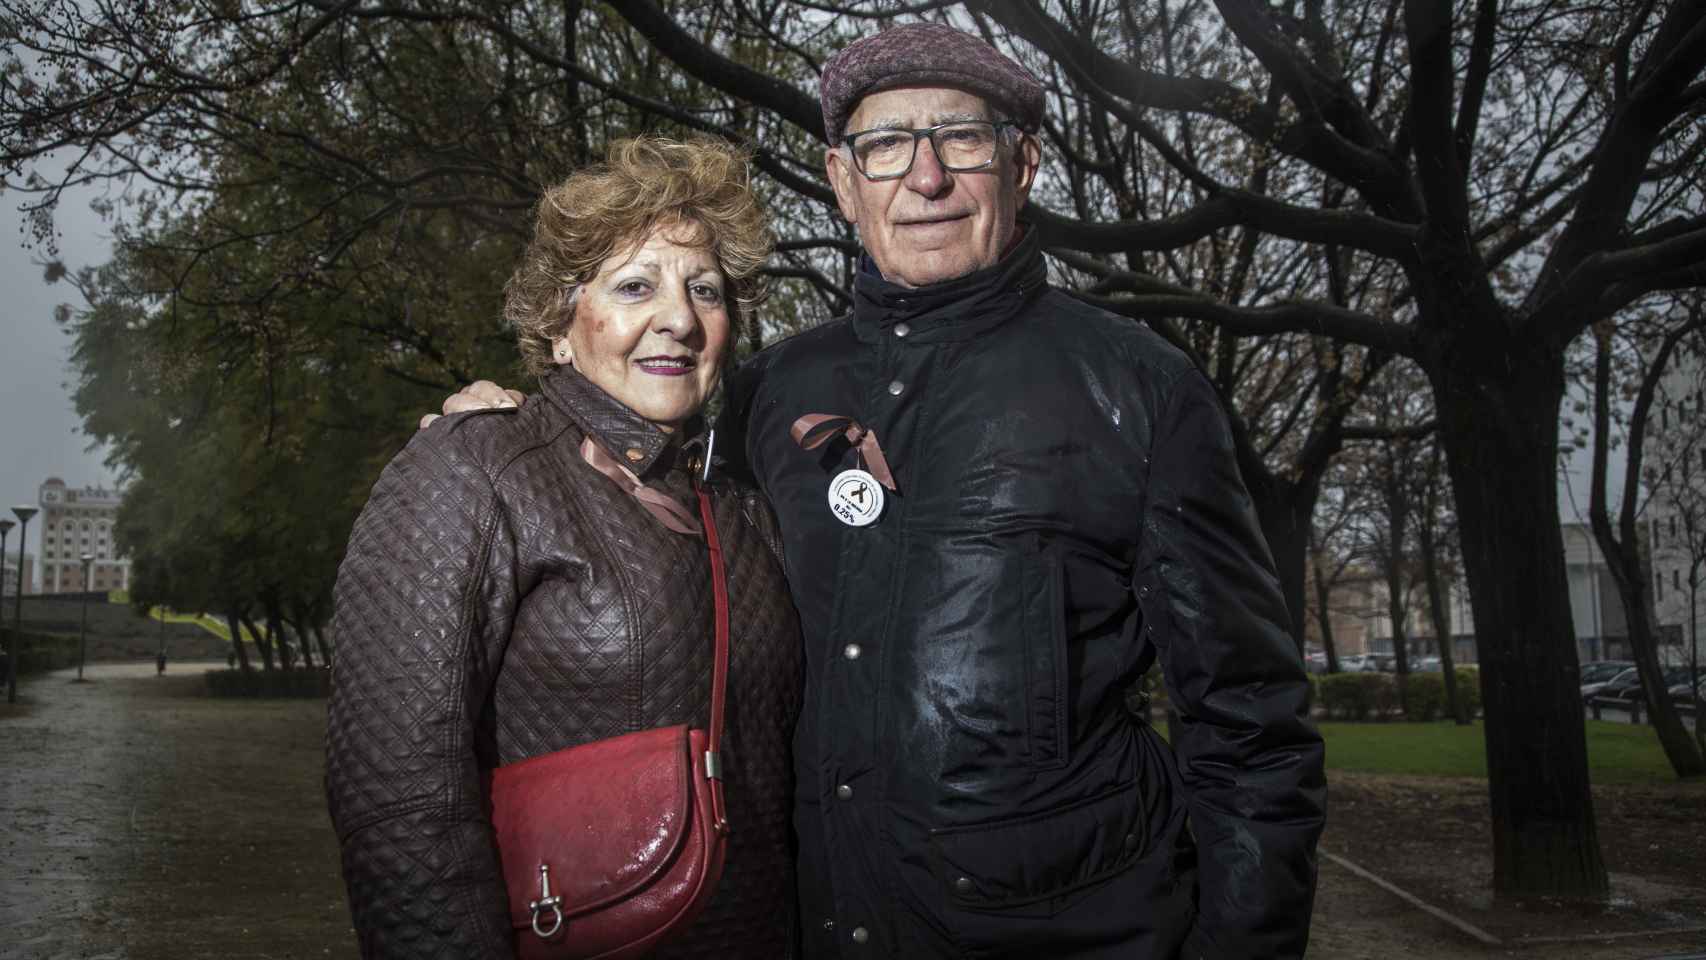 Antonio Millán, 73 años, extrabajador de El Corte Inglés y su esposa Maria del Carmen Toro, de su misma edad.